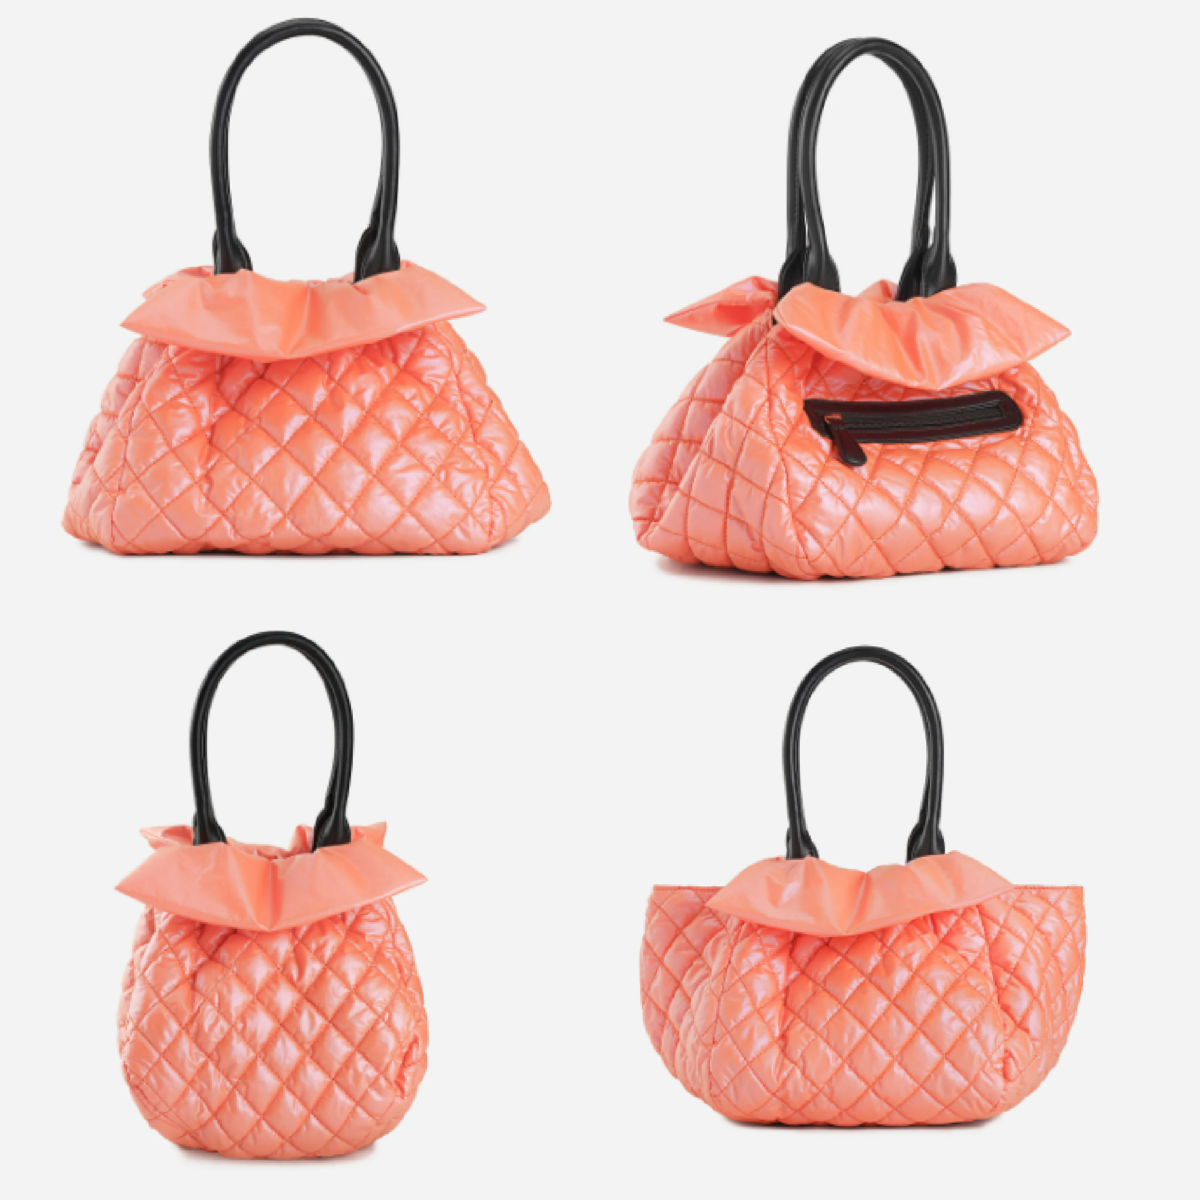 TIJN Orange Peel Harlow Bag - ways to shape